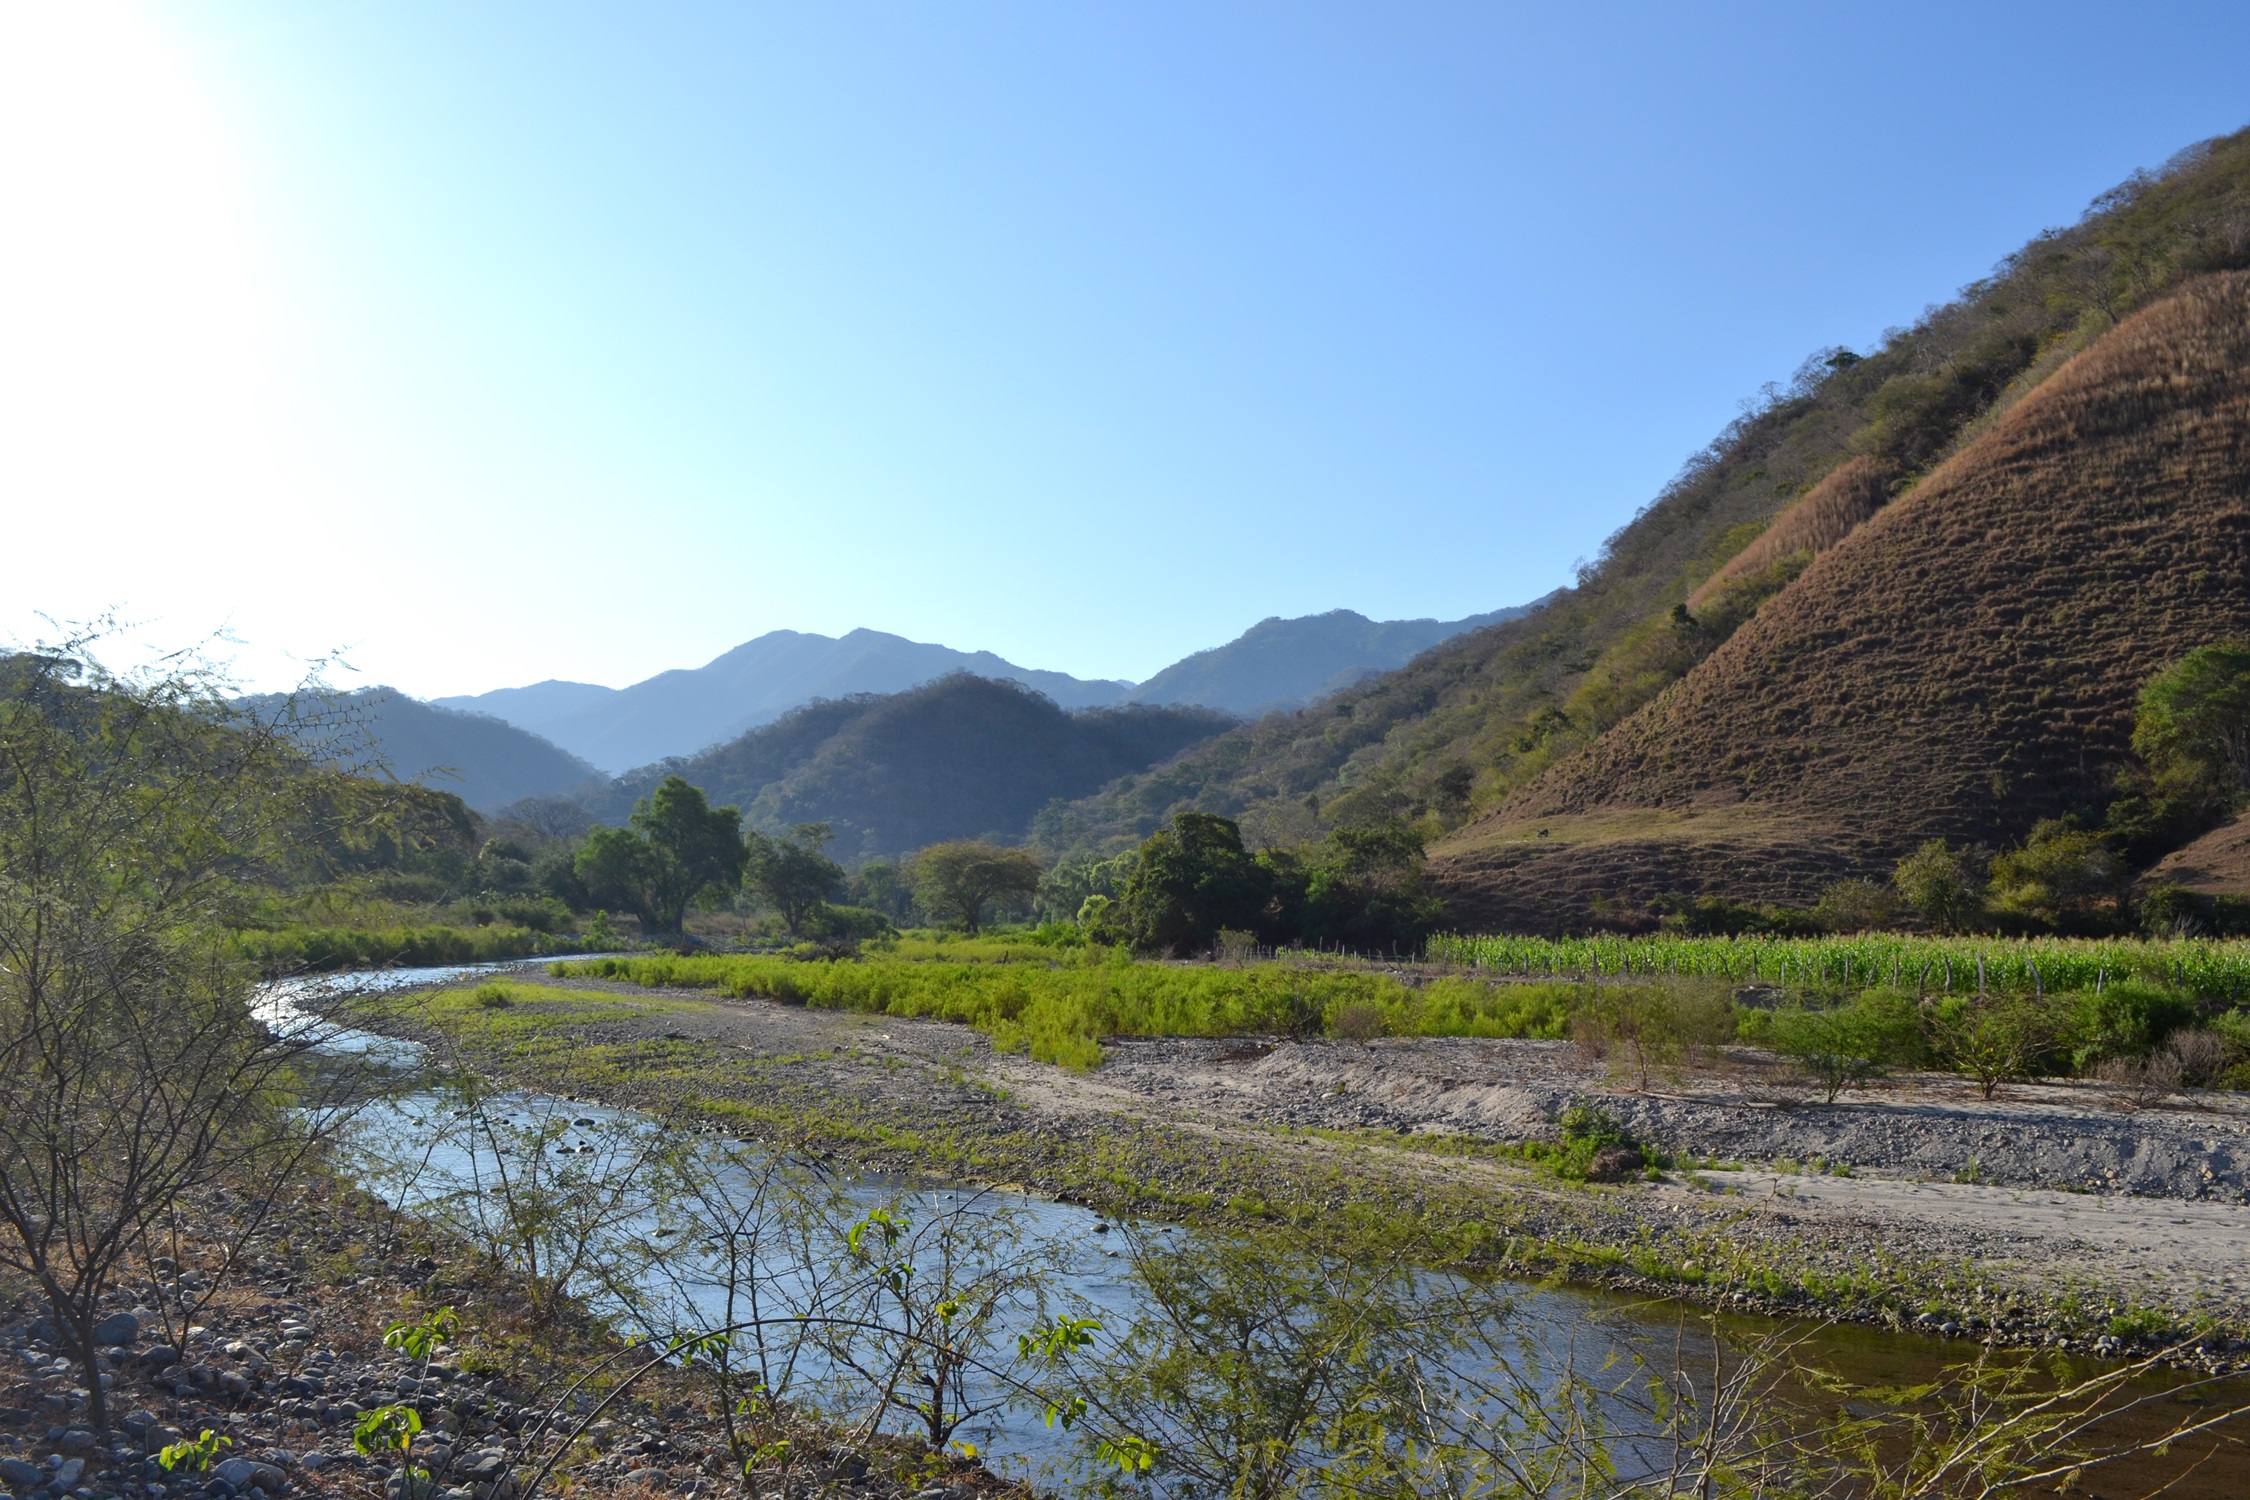 Suman 225,398 hectáreas a la protección de bosques y selvas que abastecen de agua a las comunidades de Bahía de Banderas y Puerto Vallarta